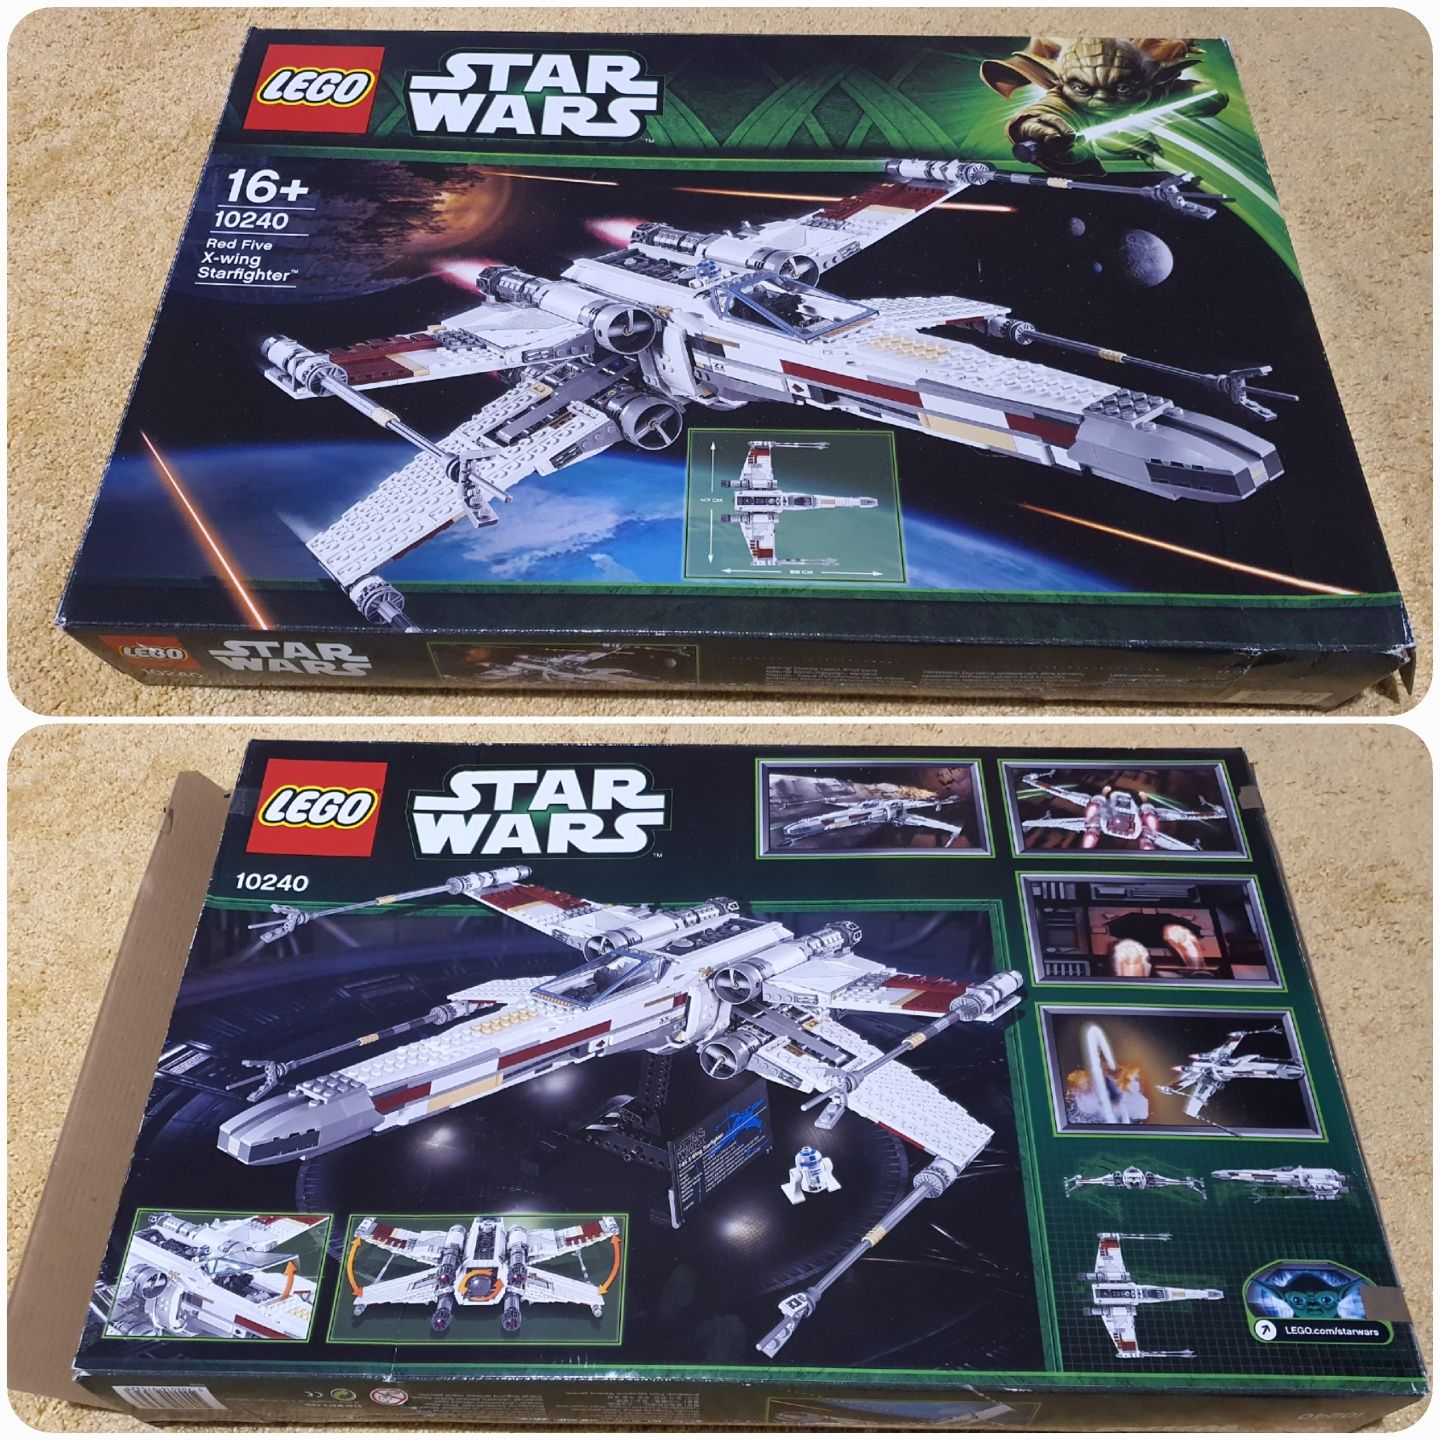 Lego Star Wars 10240 X-Wing Starfighter Red Five komplett!